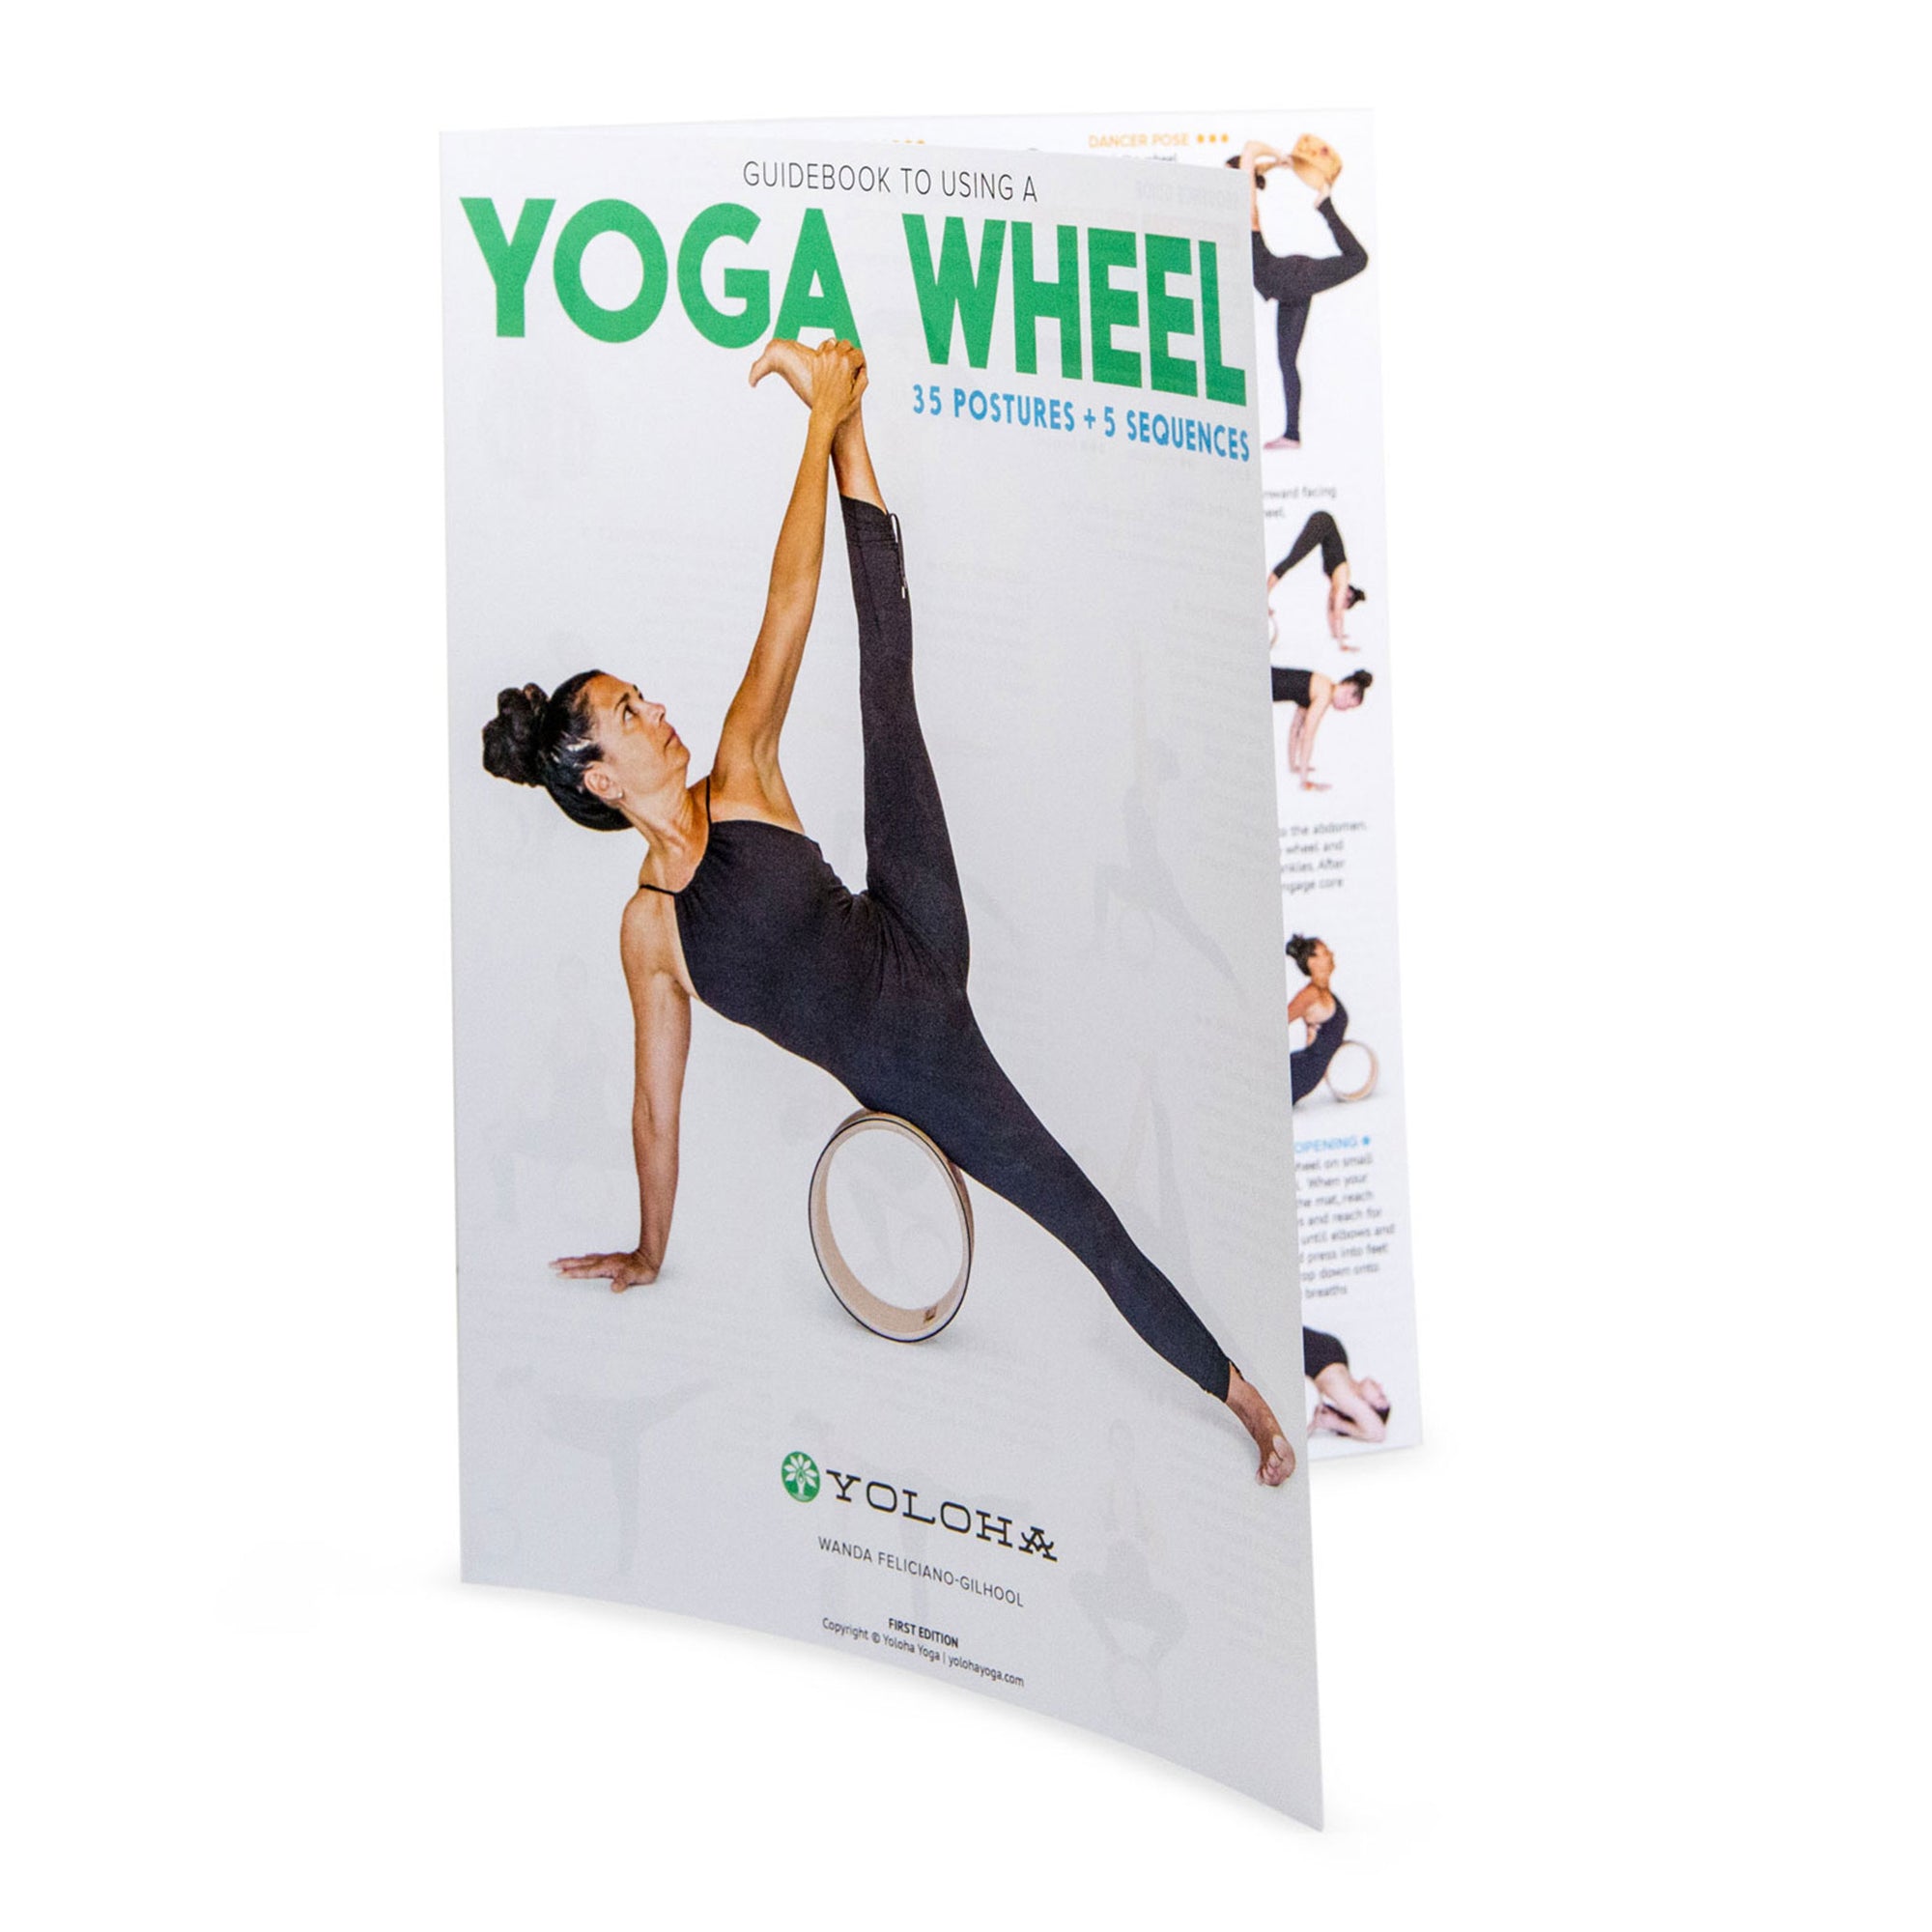 Yoga Tools - Yoga Mat, Yoga Bag & Yoga Books - Indicinspirations